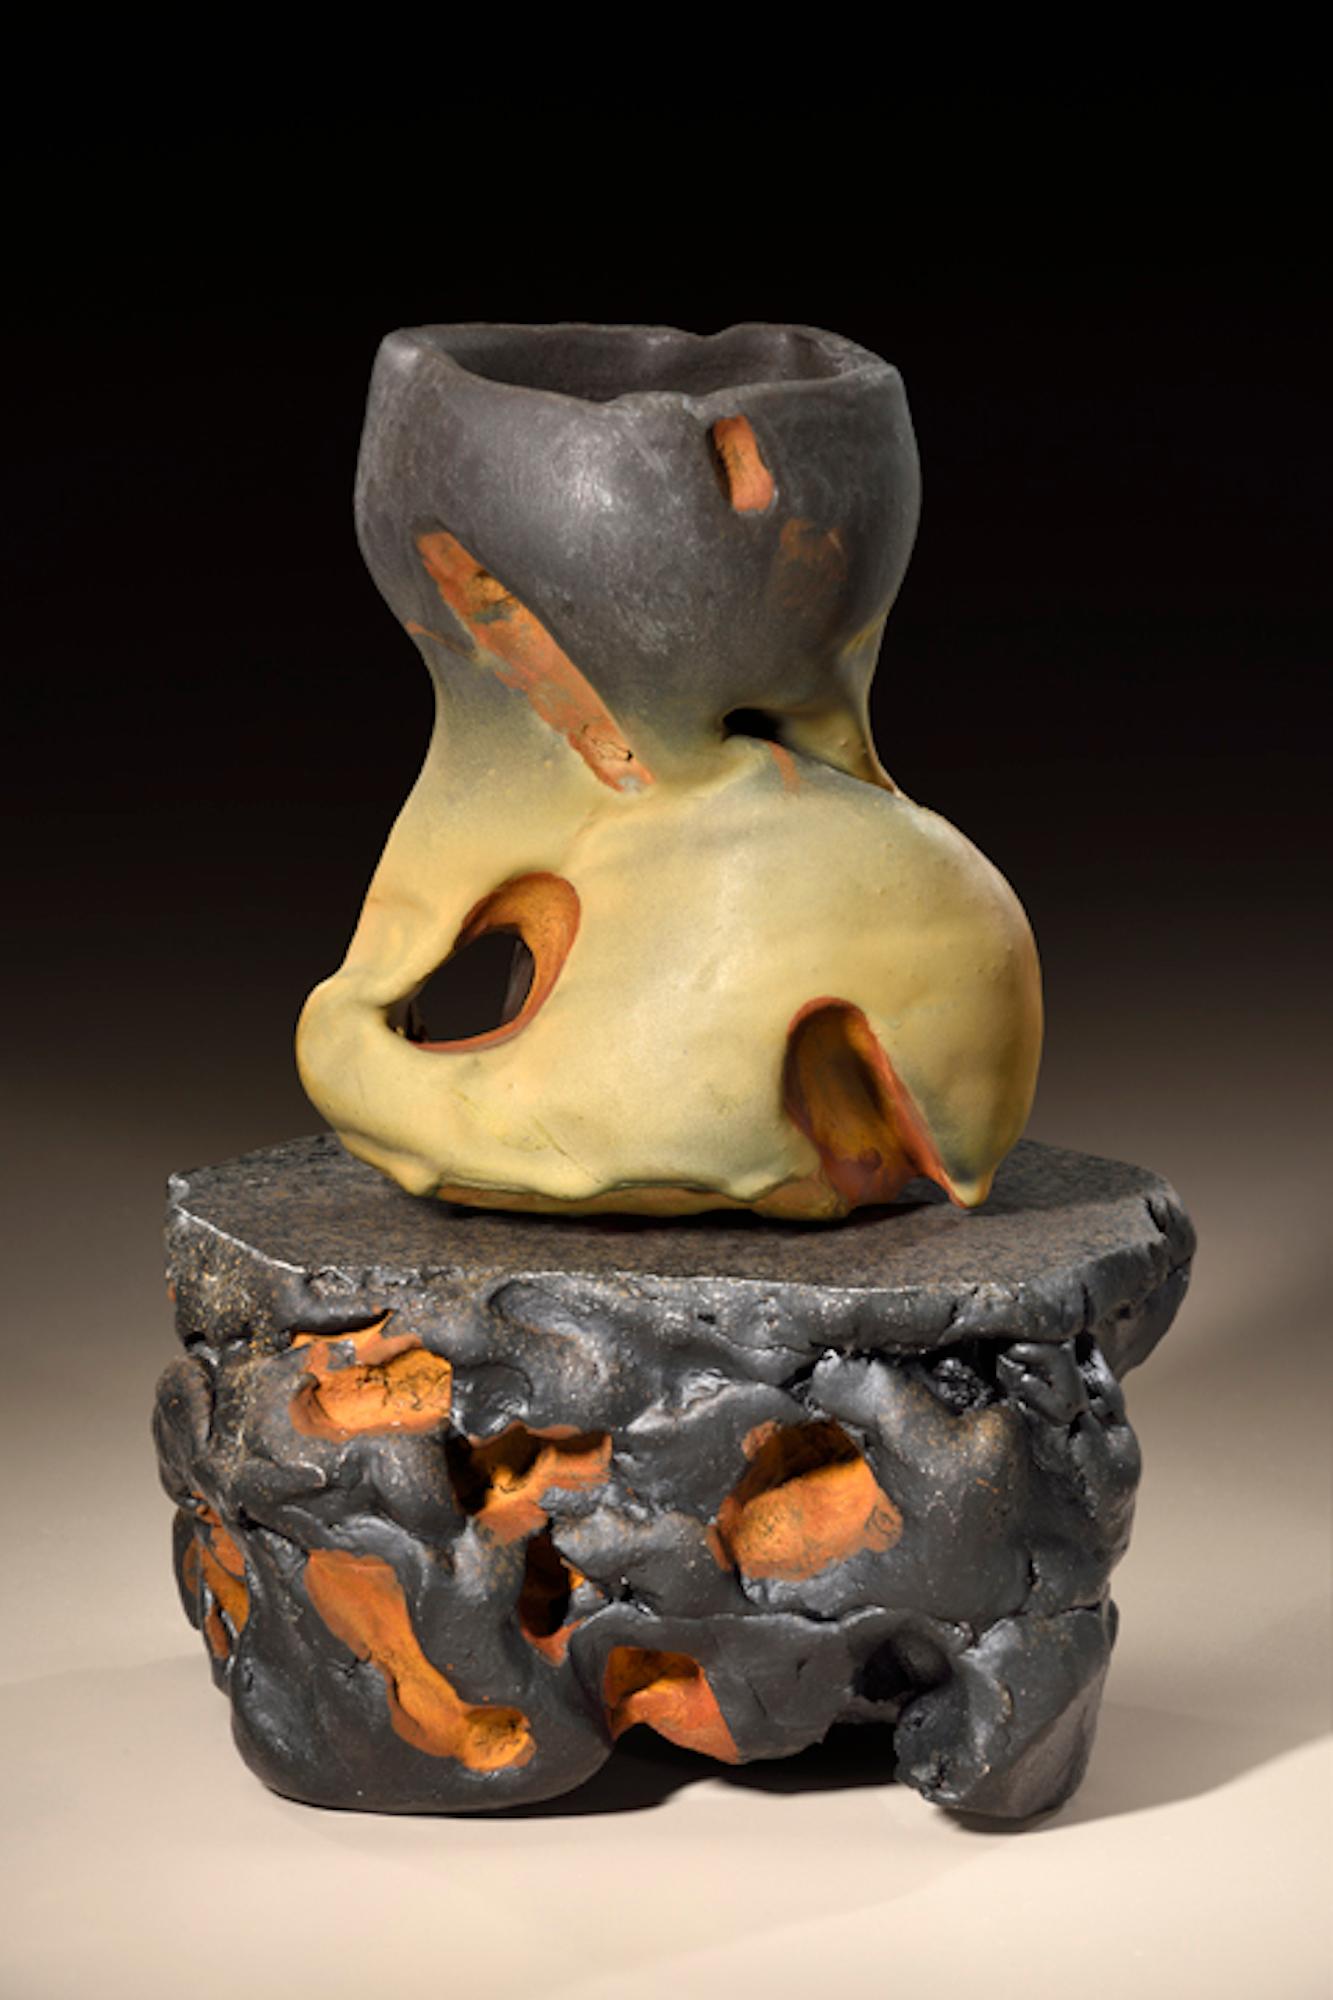 Modern Richard Hirsch Ceramic Scholar Rock Cup Sculpture #46, 2018 For Sale